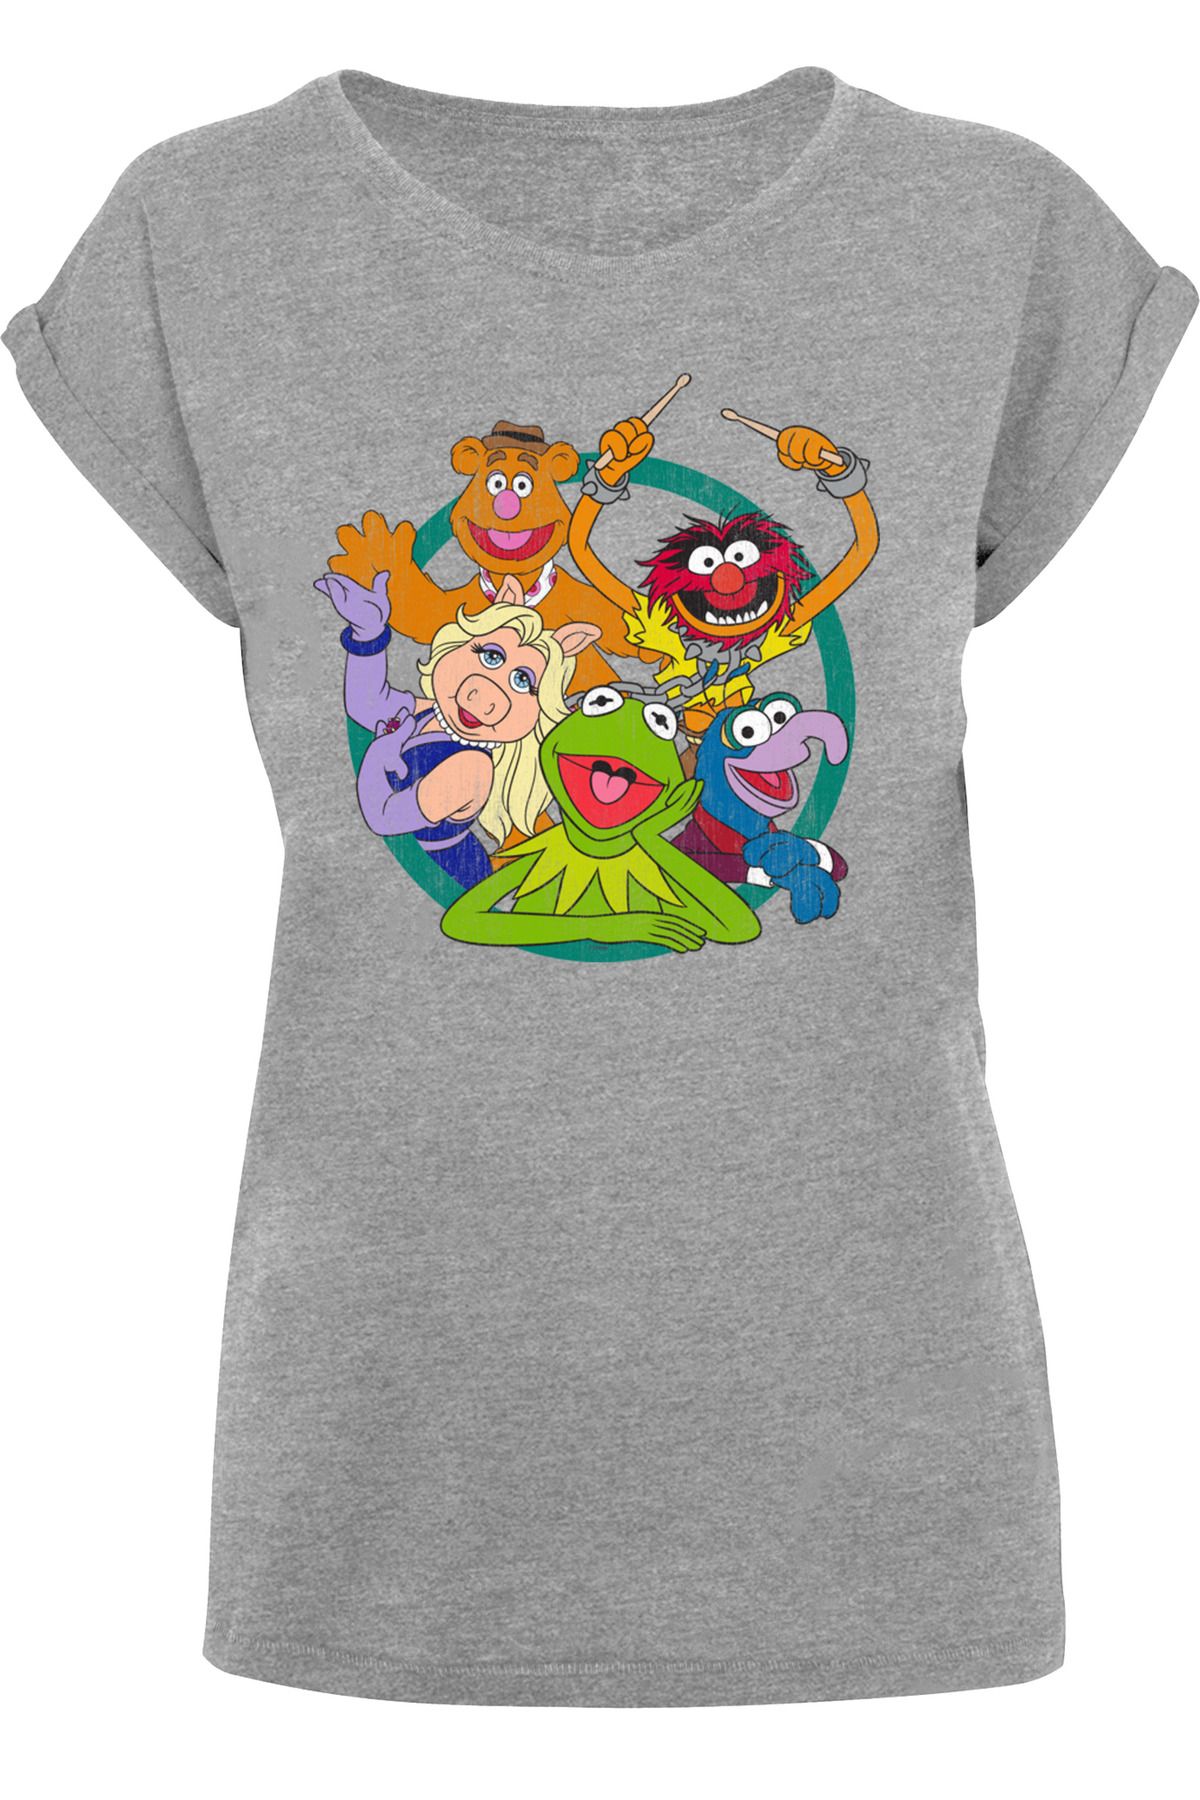 Trendyol The Damen-T-Shirt mit verlängerter Group Disney F4NT4STIC Muppets Schulterpartie Damen mit Circle -